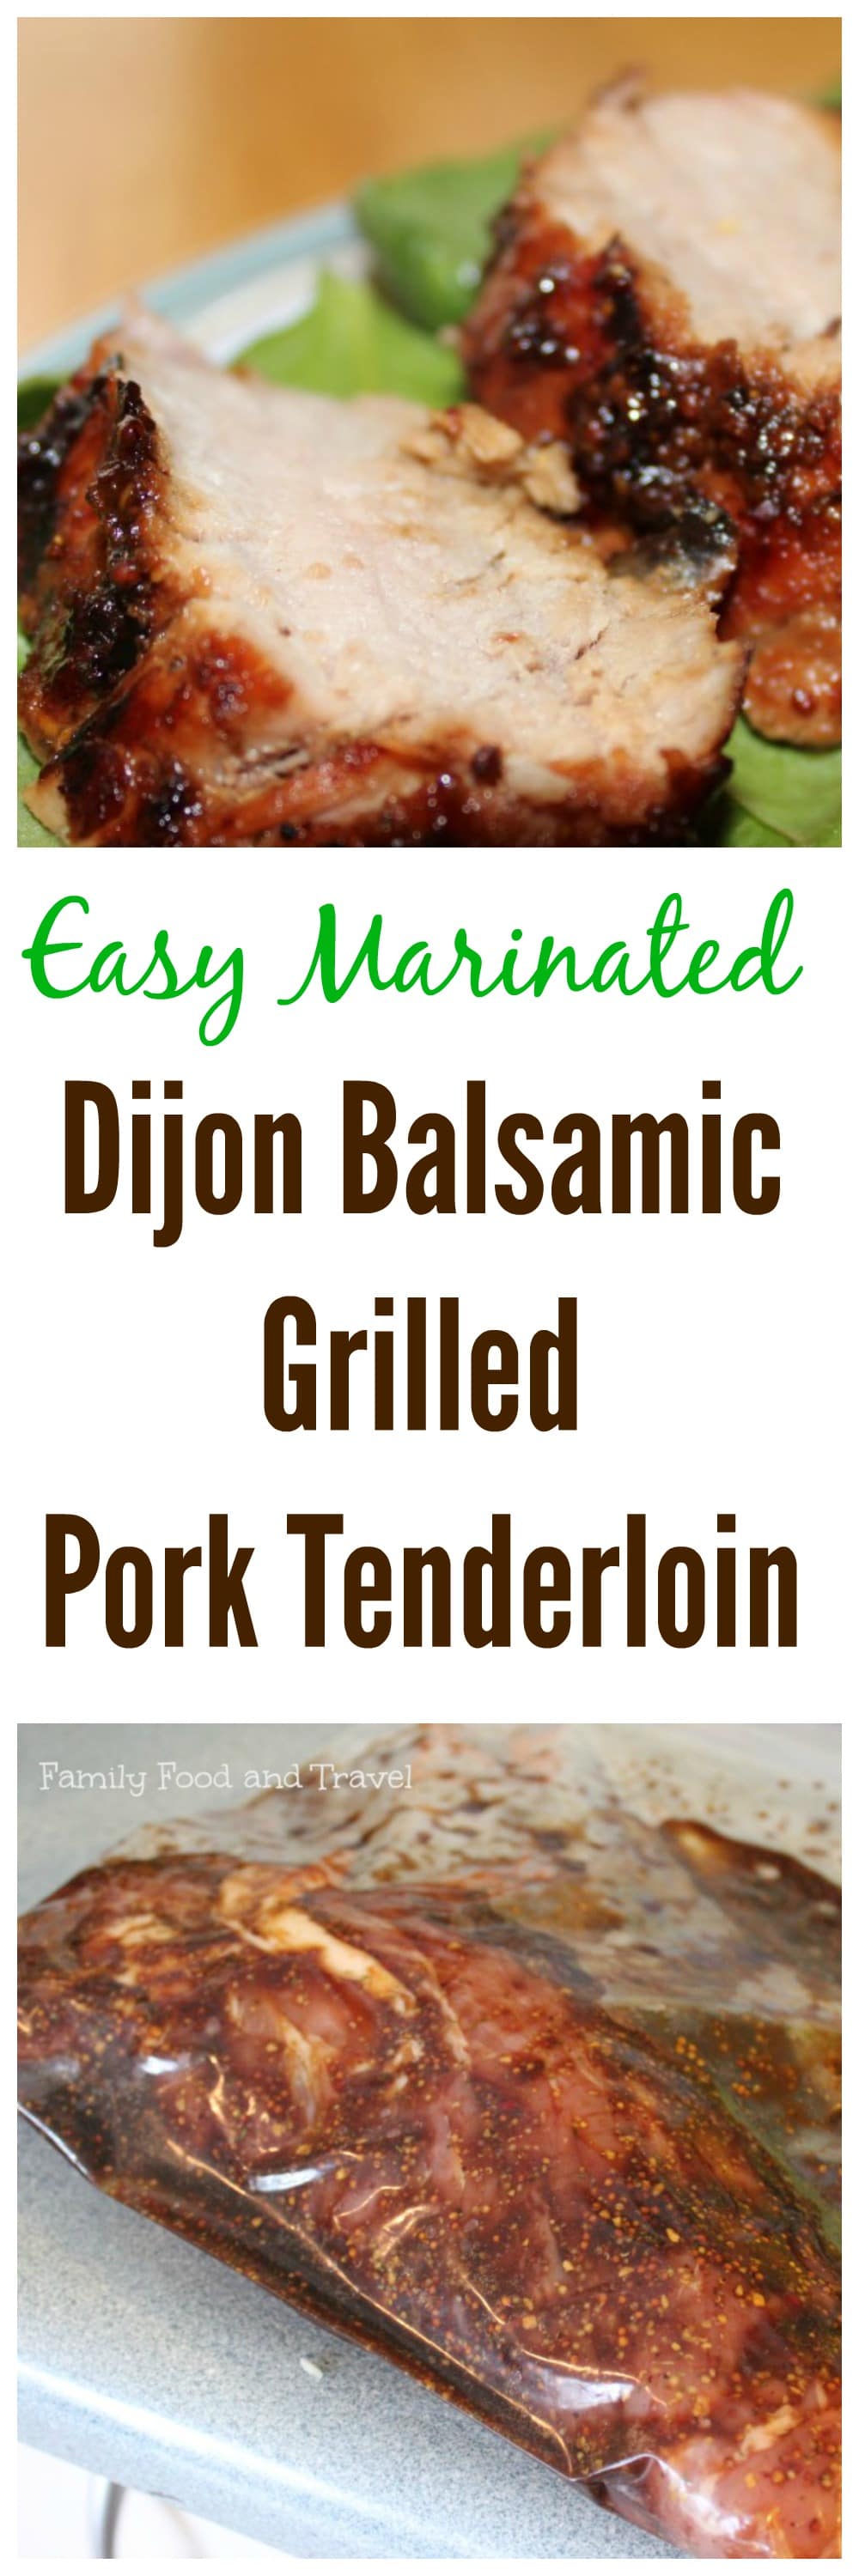 Dijon Balsamic Grilled Pork Tenderloin